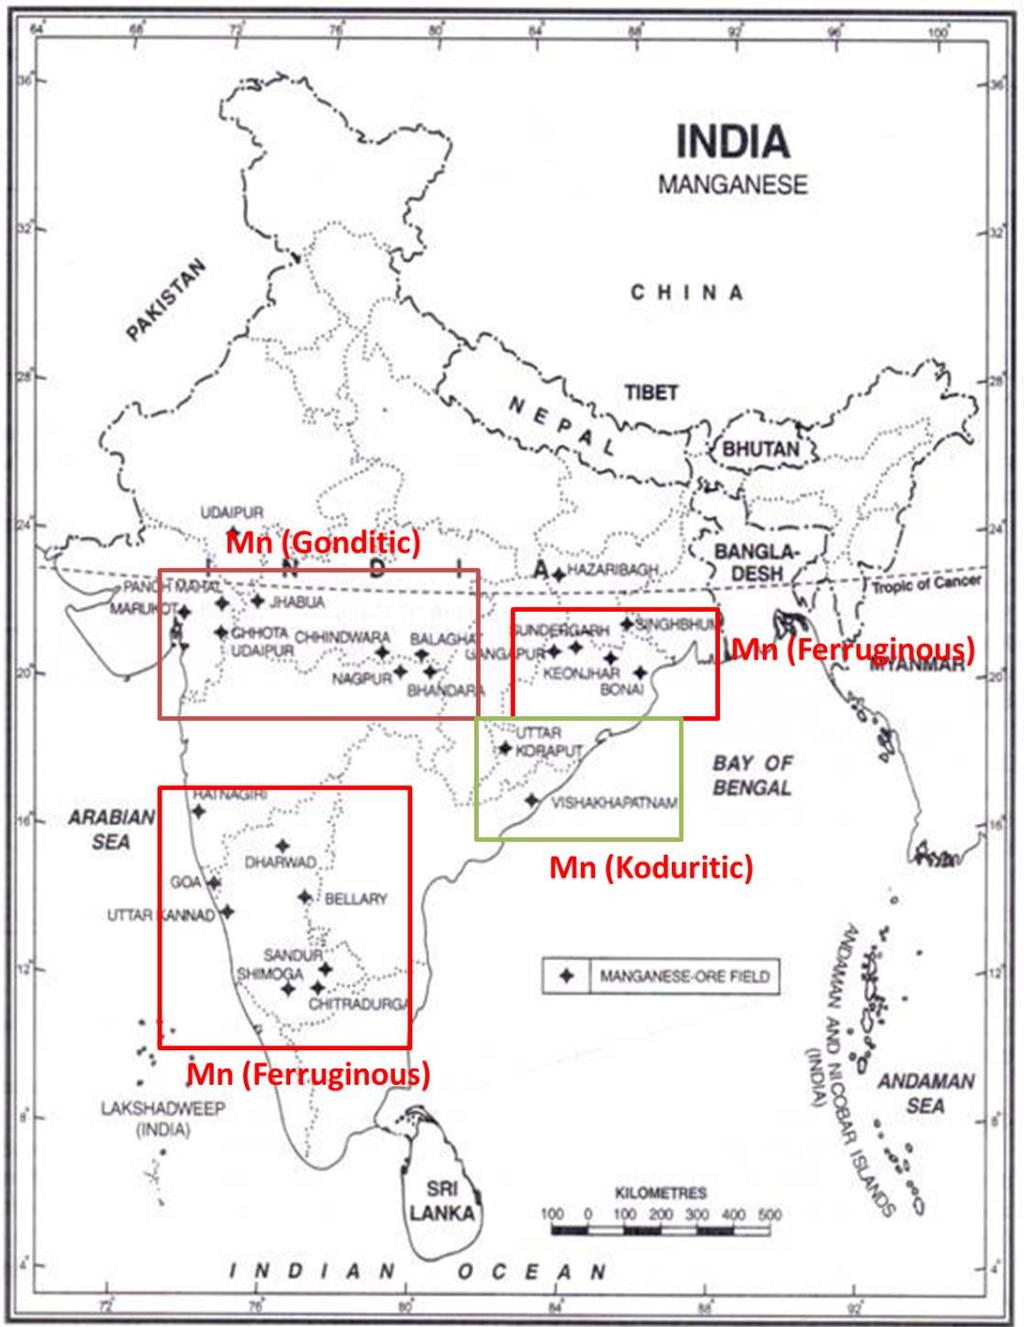 com/india- 2/production-and-distribution-of-manganese-in-india/19758 Goa 0 34873 34873 Jharkhand 3969 9711 13680 Karnataka 4908 89958 94866 Ferrugenous West Bengal 0 200 200 Odisha